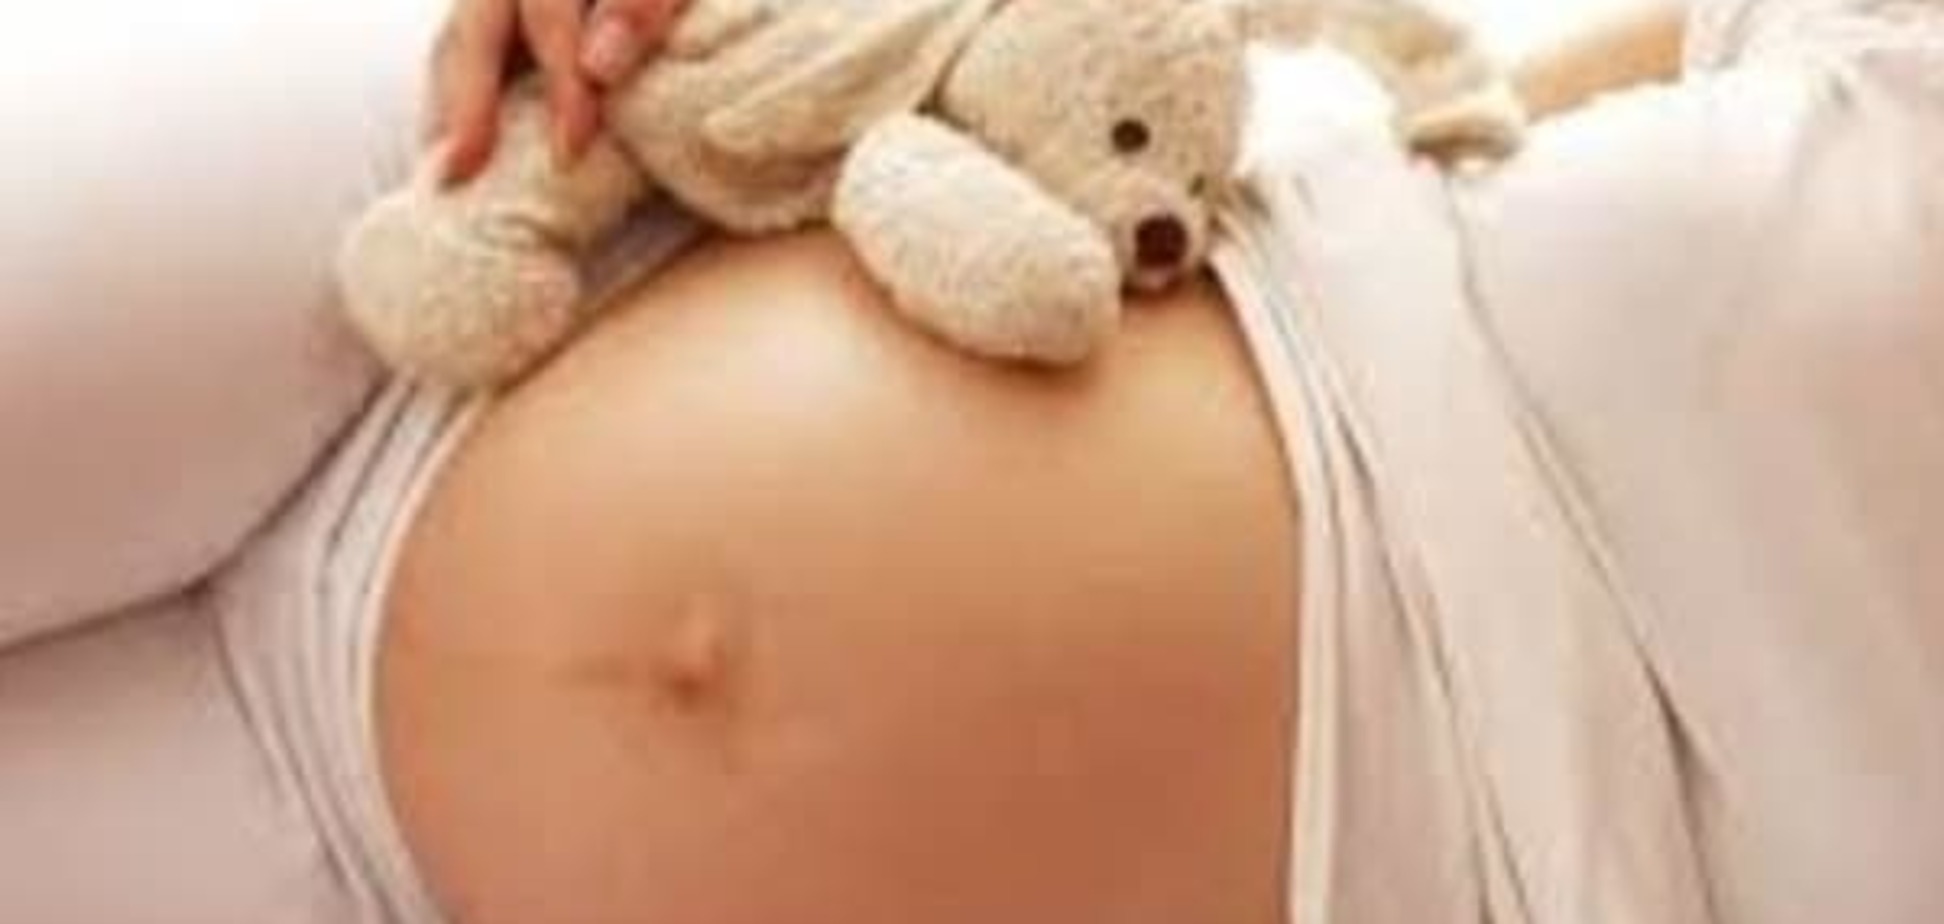 Будущая мама: как побороть страхи при беременности